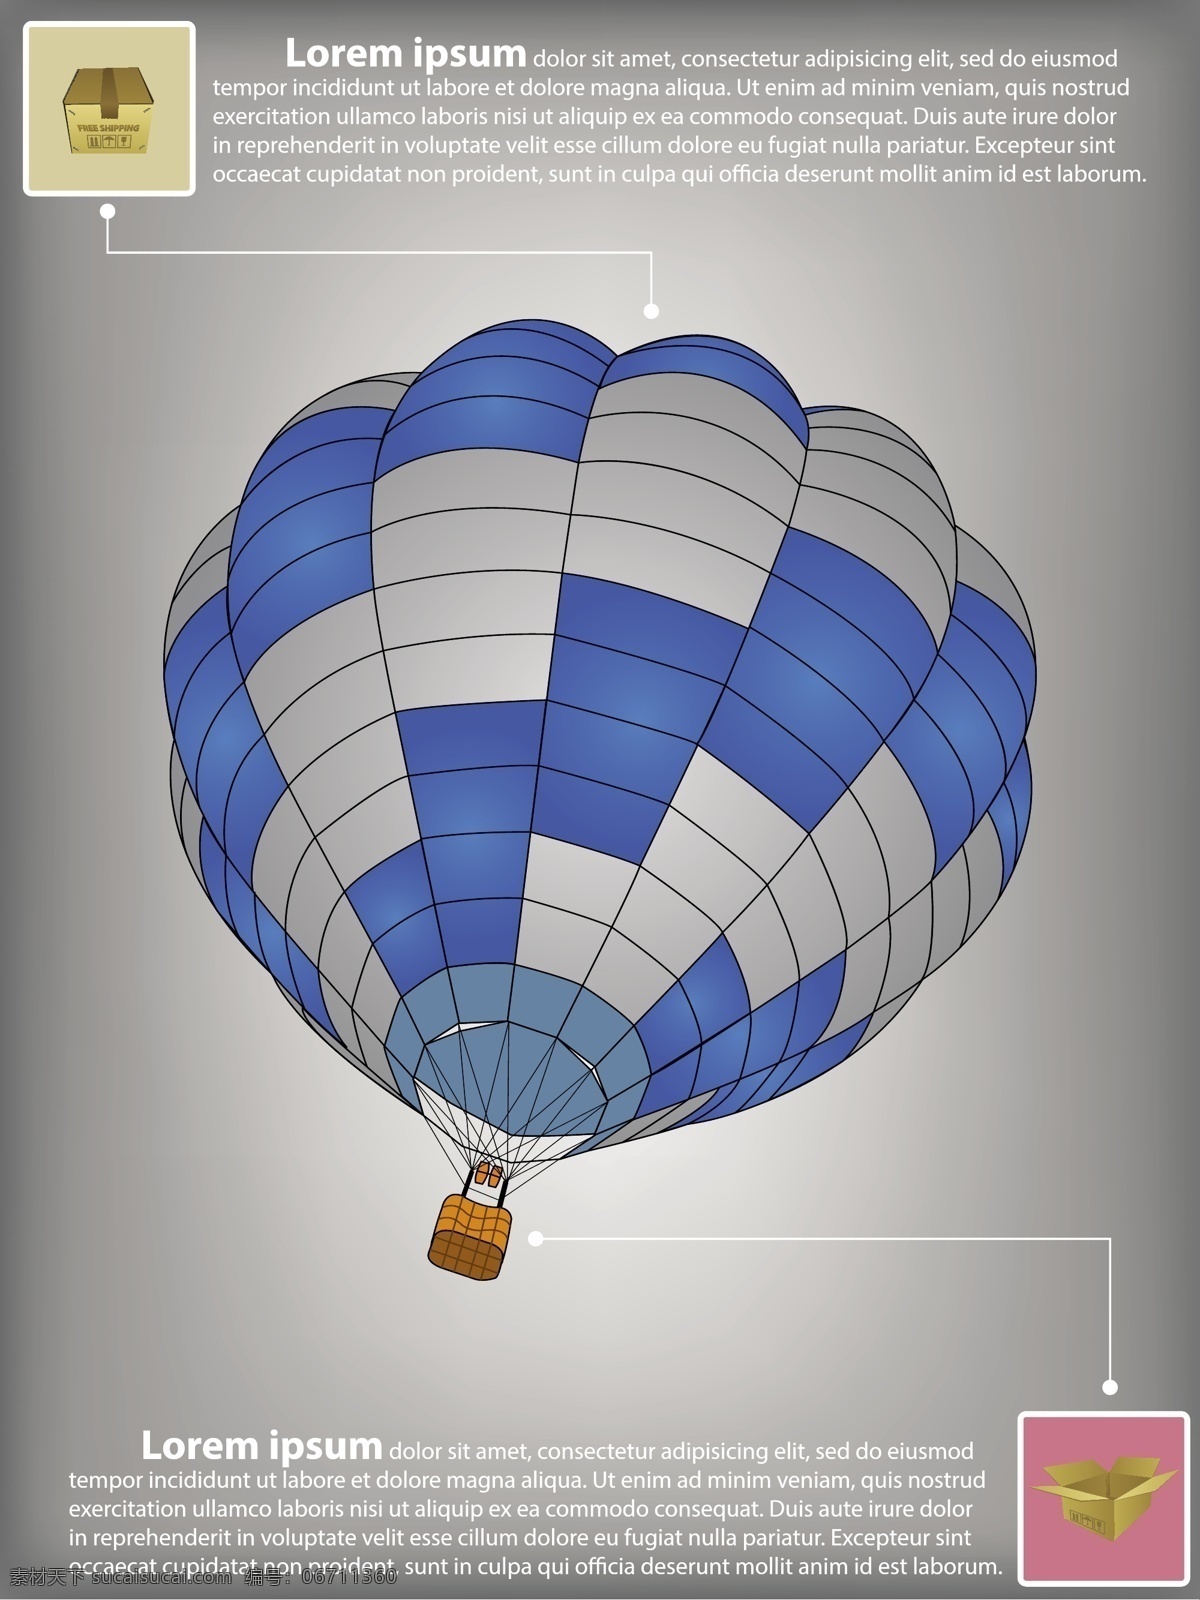 热气球 业务 模板 矢量 气球 球 商务模板 商业 向量的业务 模板矢量 矢量图 商务金融